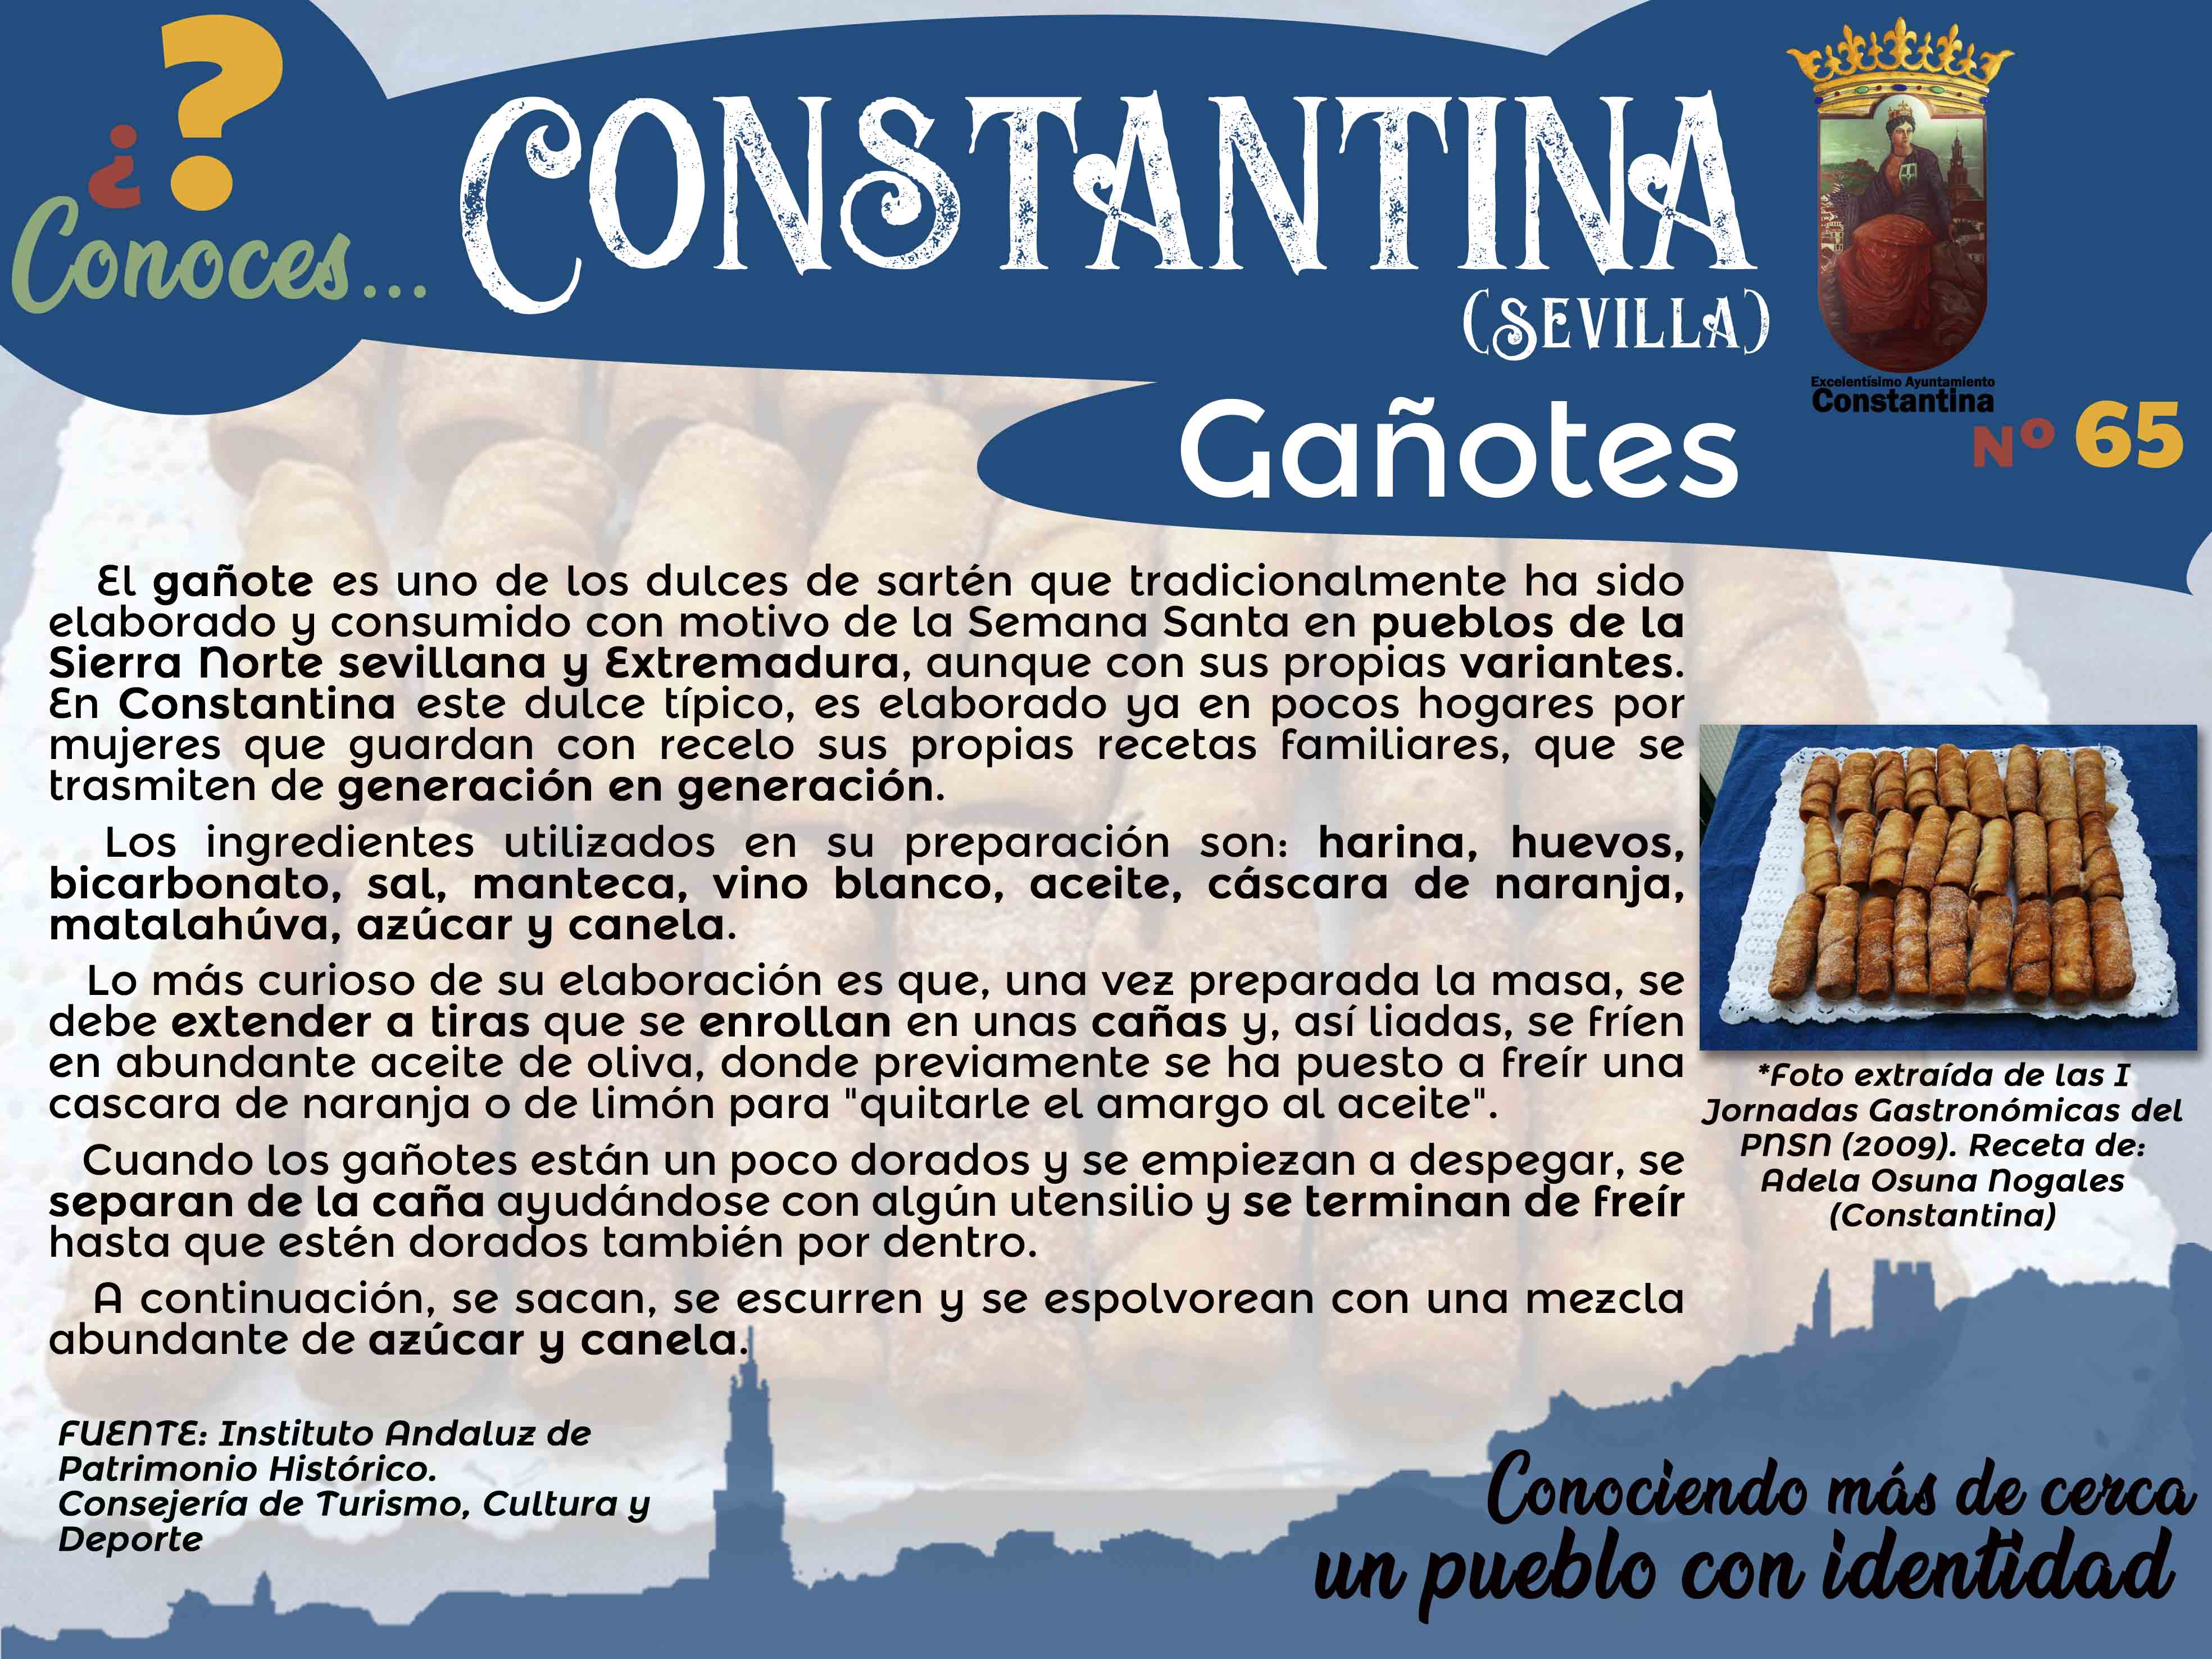 65 Gañotes dulces típicos de Constantina